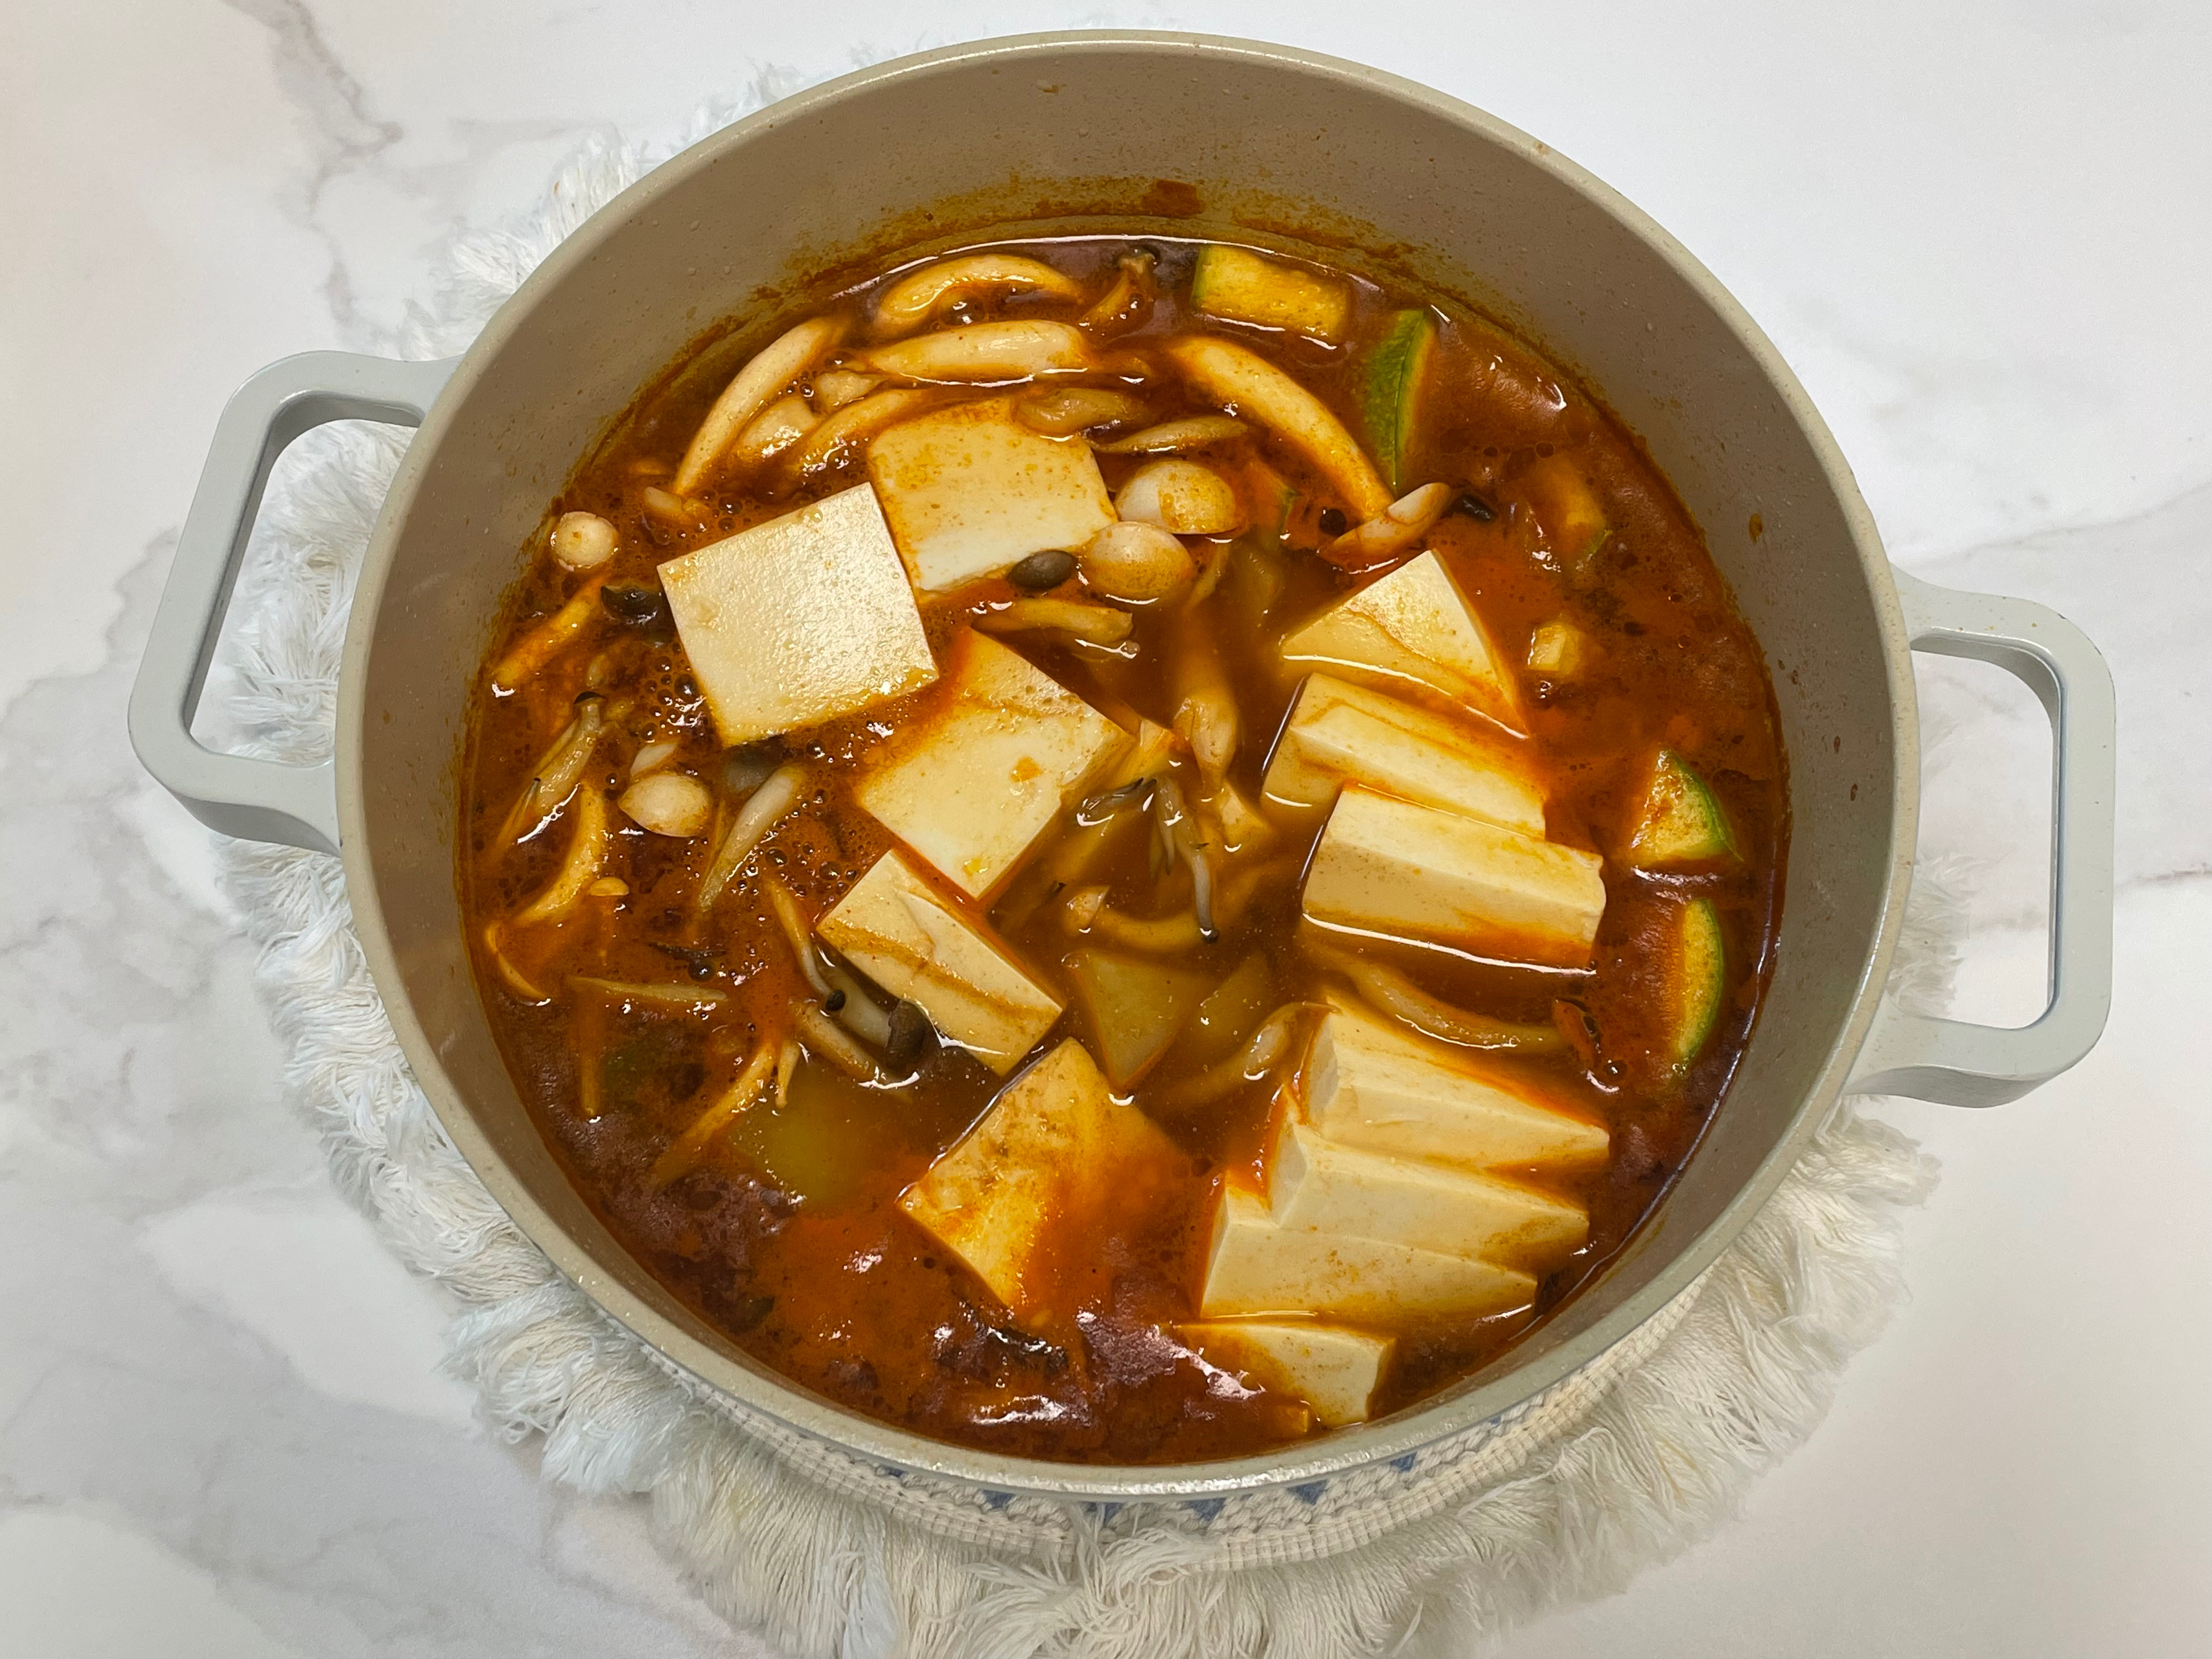 韩式猪肉辣酱汤